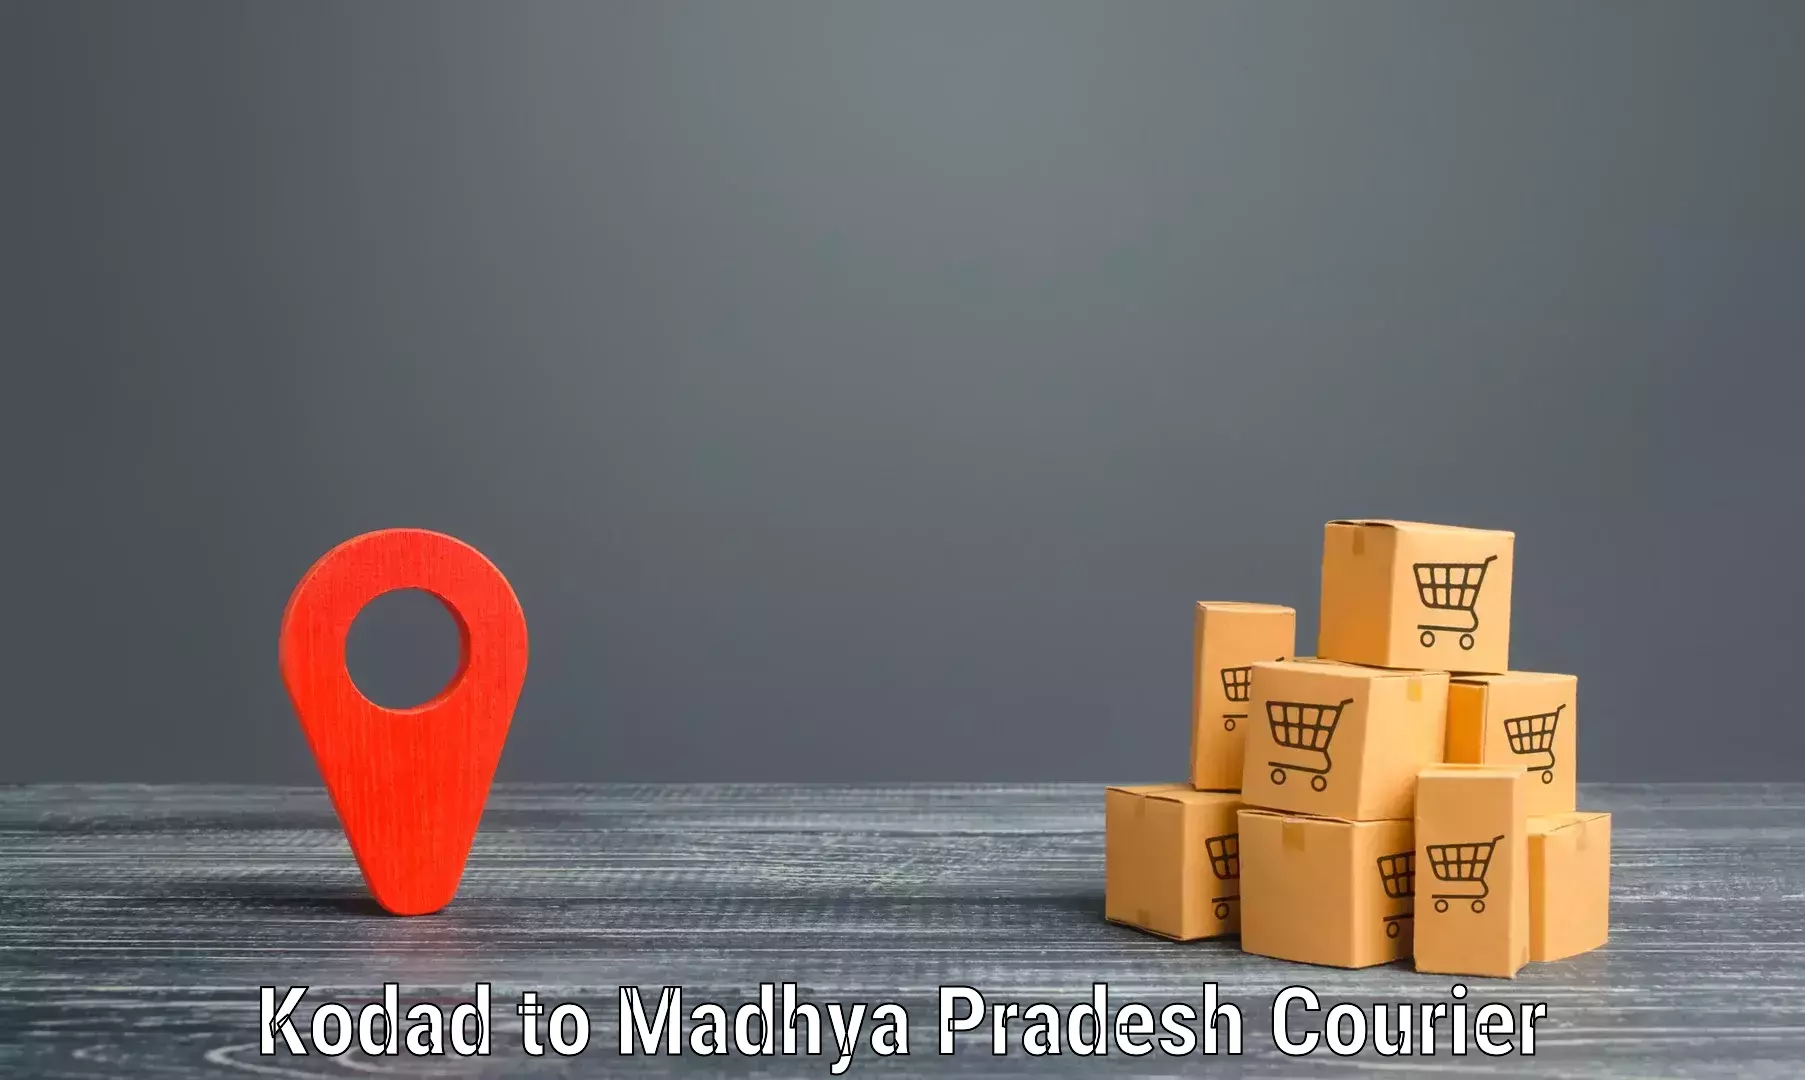 Parcel service for businesses Kodad to Mandla